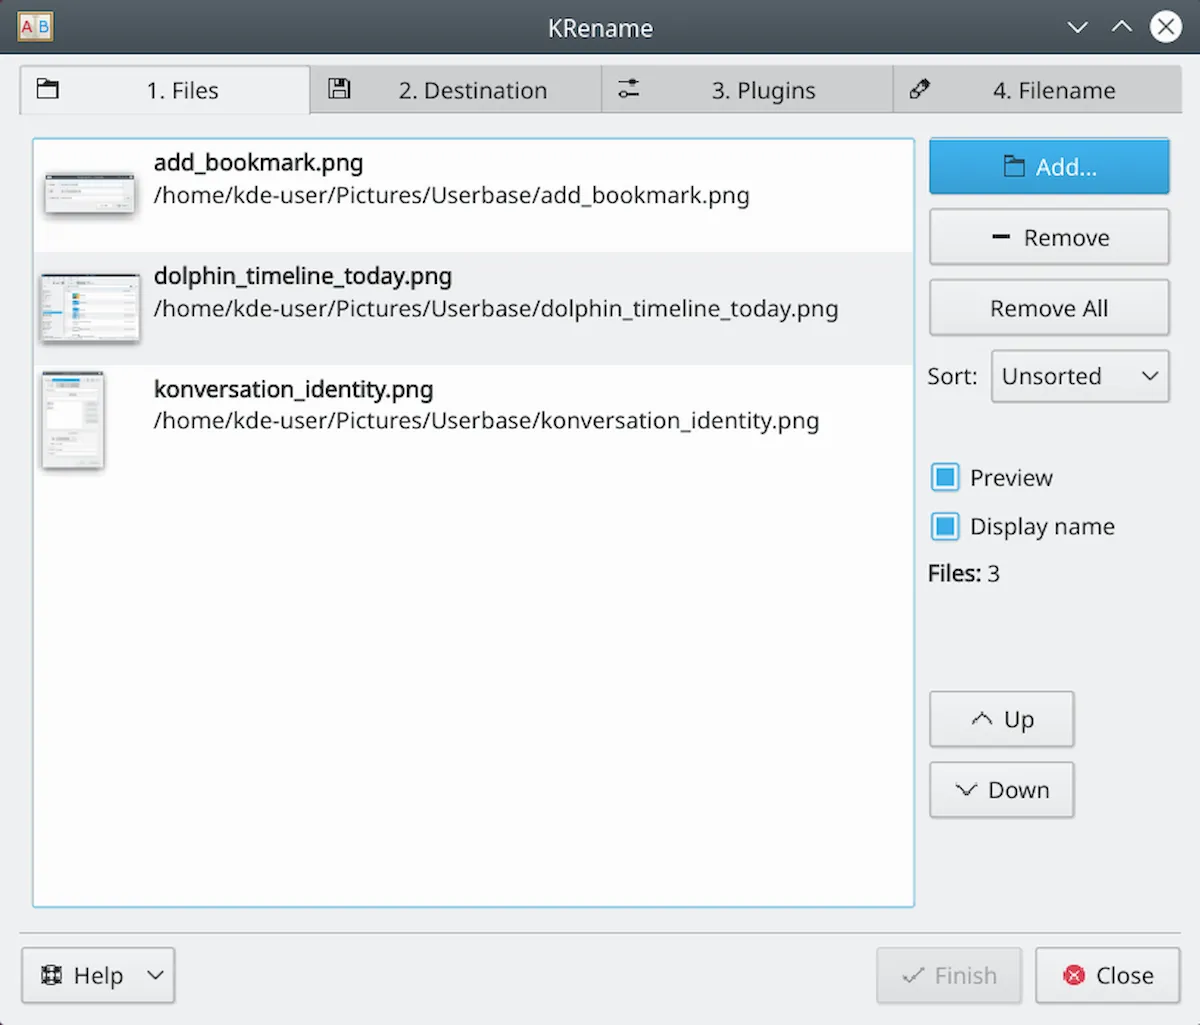 Como instalar o renomeador de arquivos Krename no Linux via Flatpak